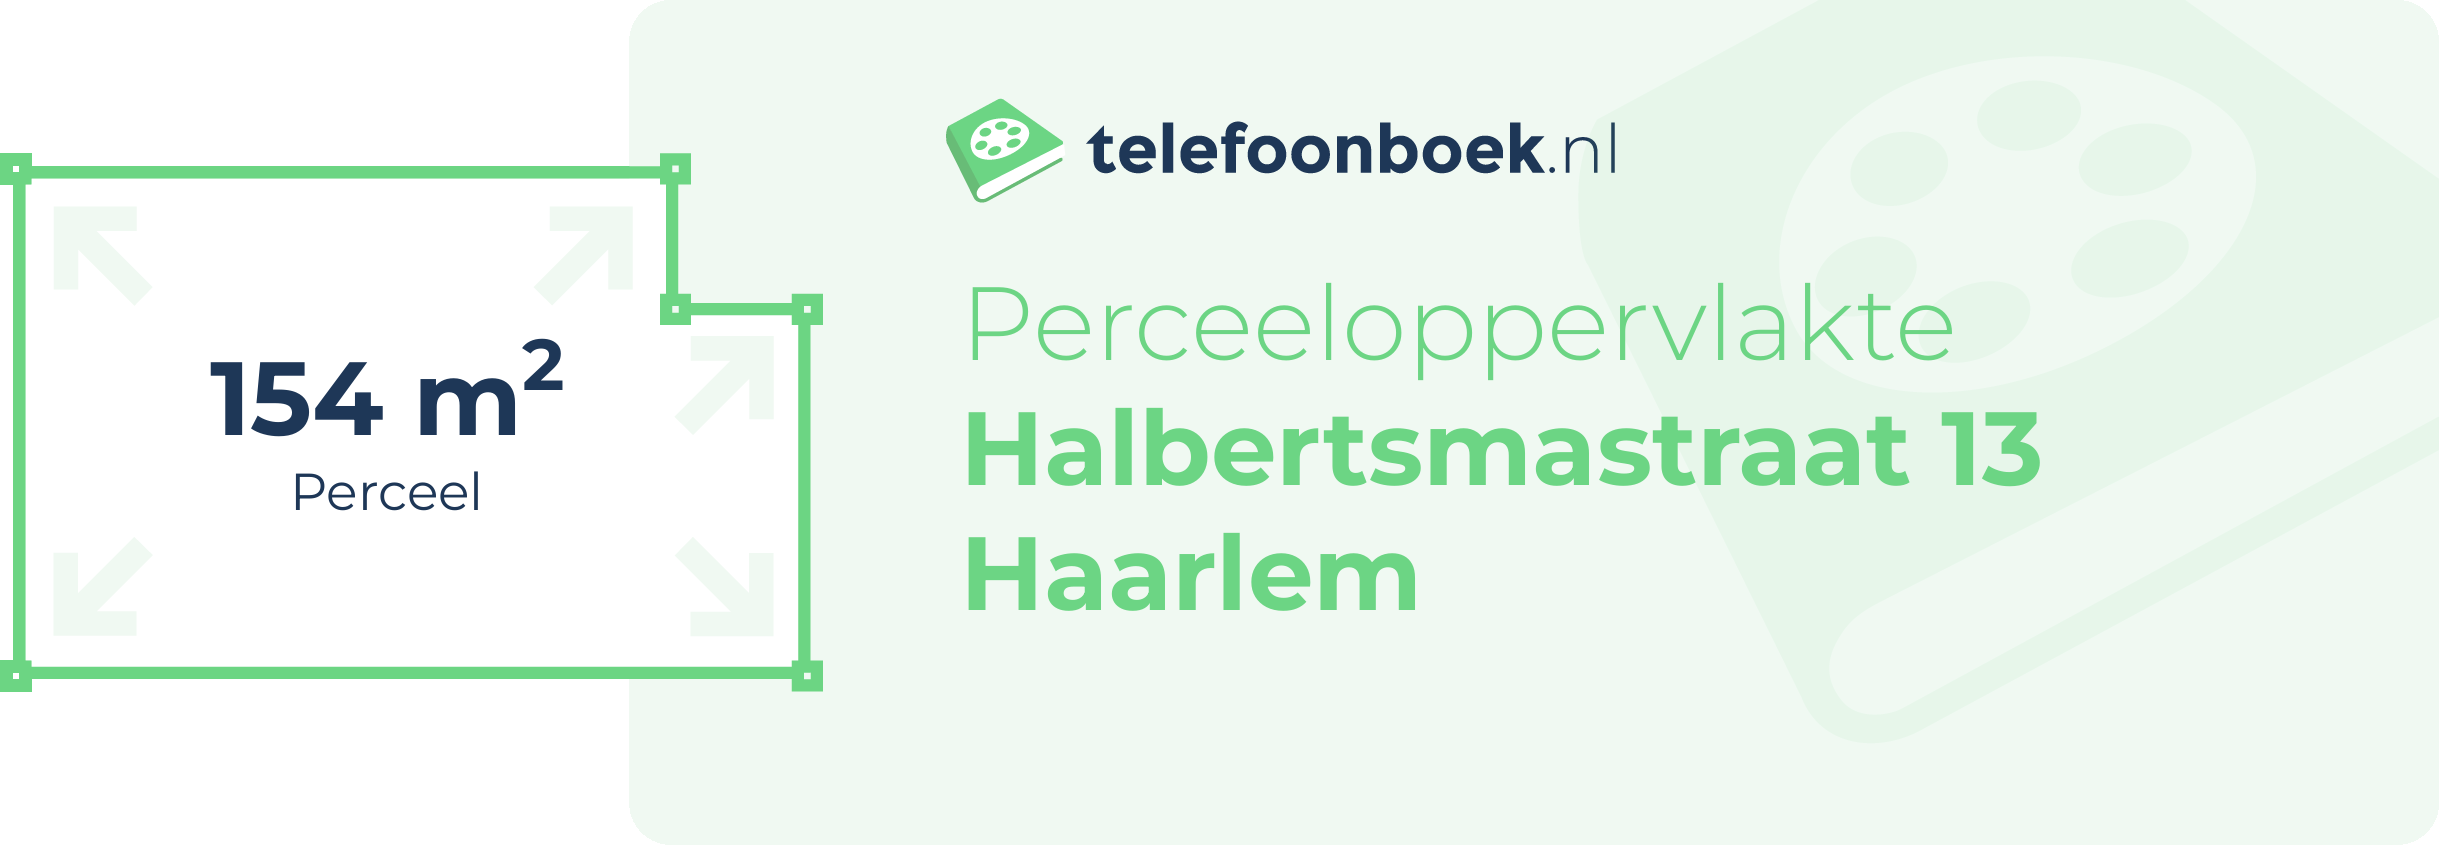 Perceeloppervlakte Halbertsmastraat 13 Haarlem